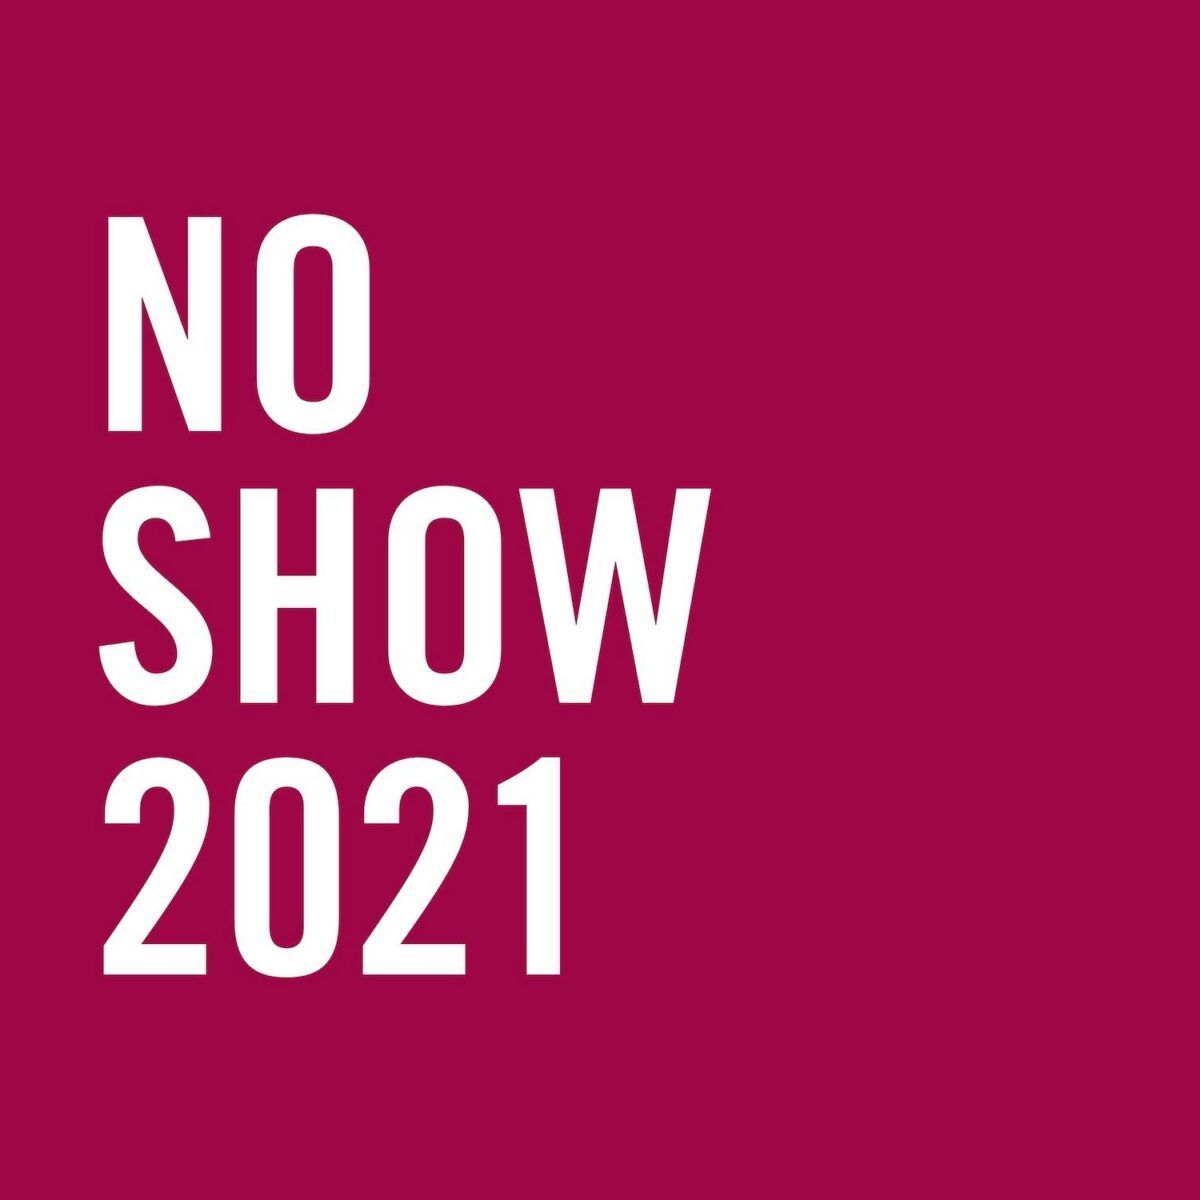 No show 2021